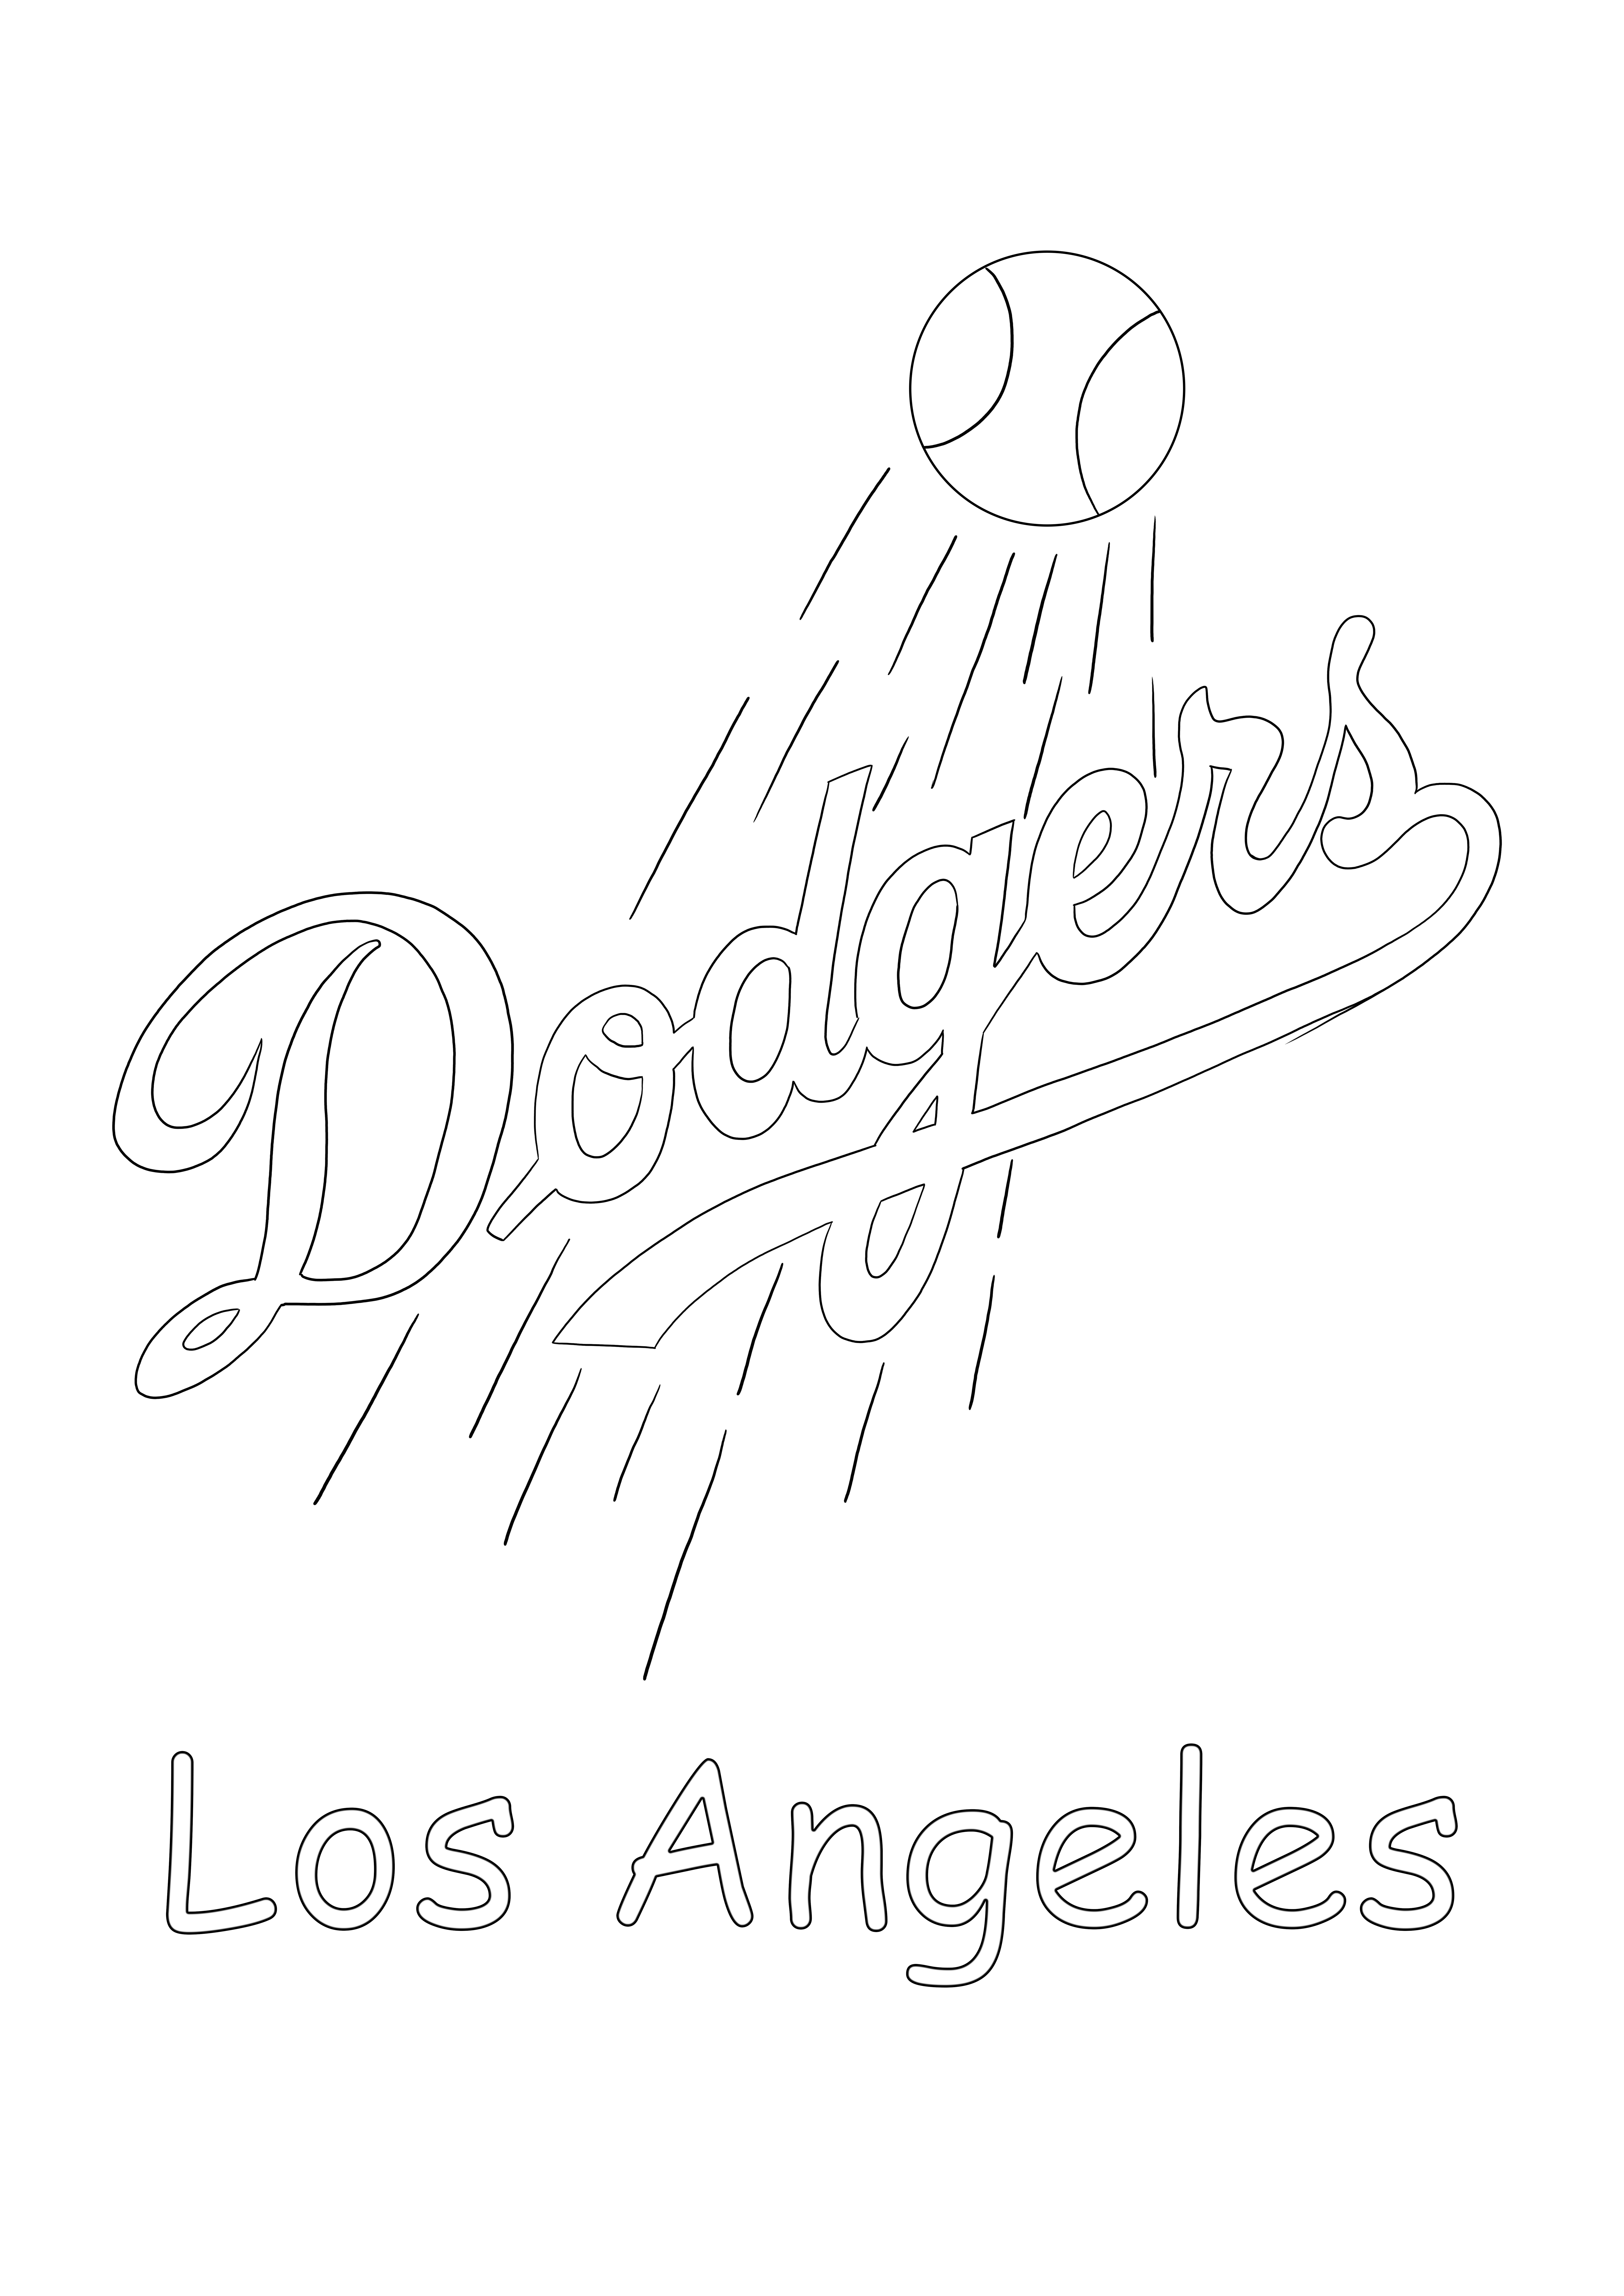 Los Angeles Dodgers logosunu tüm MLB hayranları için ücretsiz olarak basabilir ve renklendirebilirsiniz.